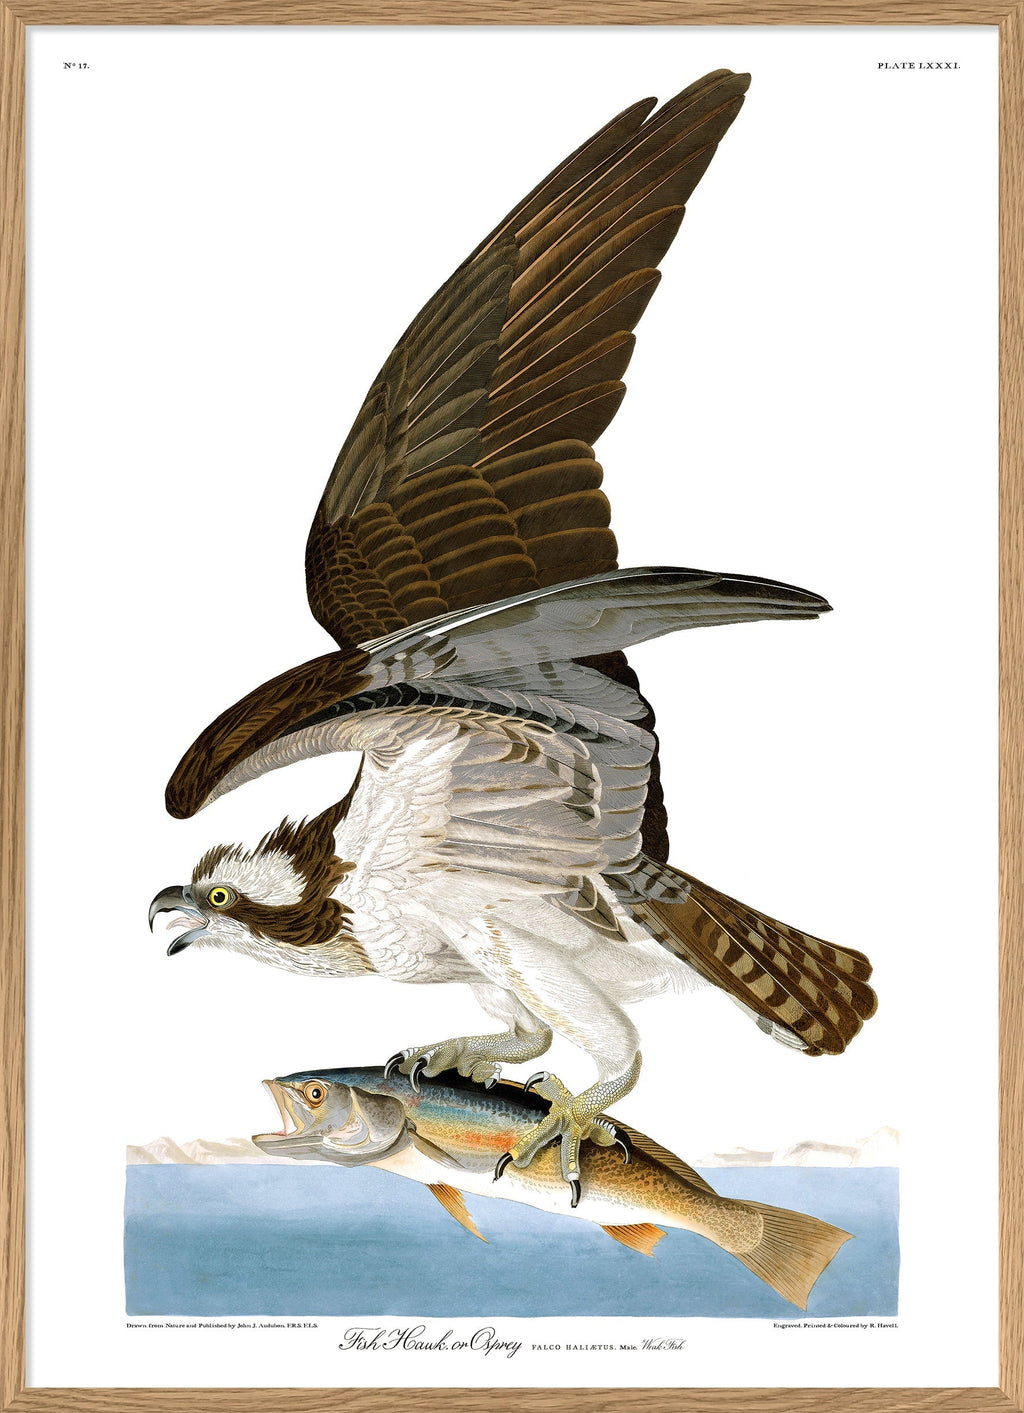 Fish Hawk or Osprey – THE DYBDAHL CO. US